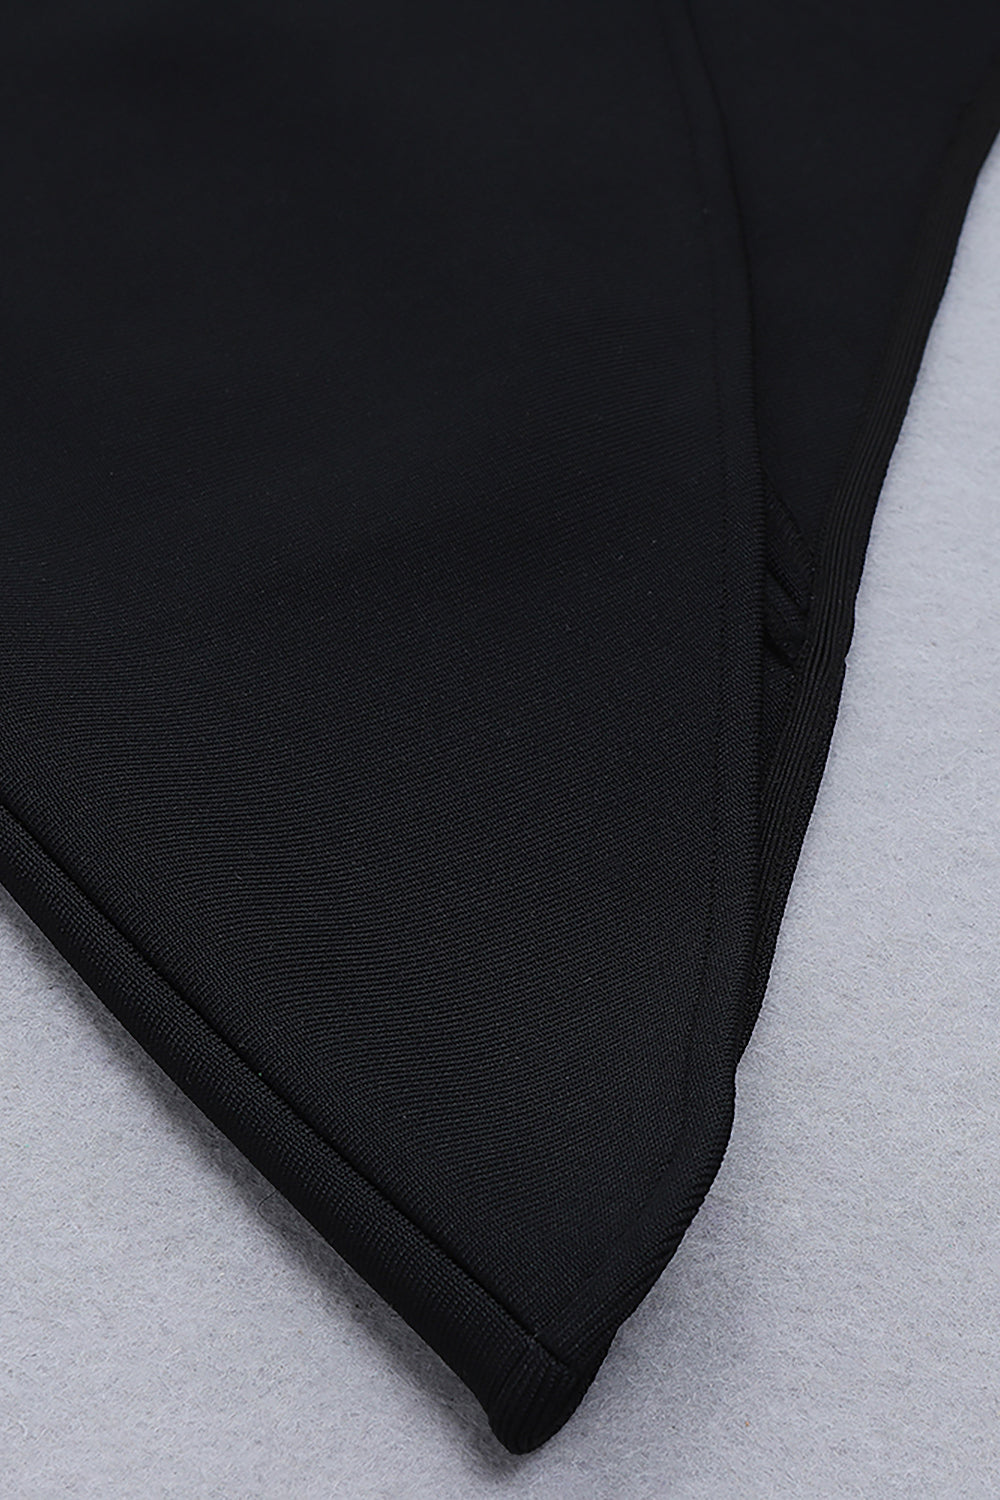 Vestido vendaje asimétrico hueco con tirantes finos negro